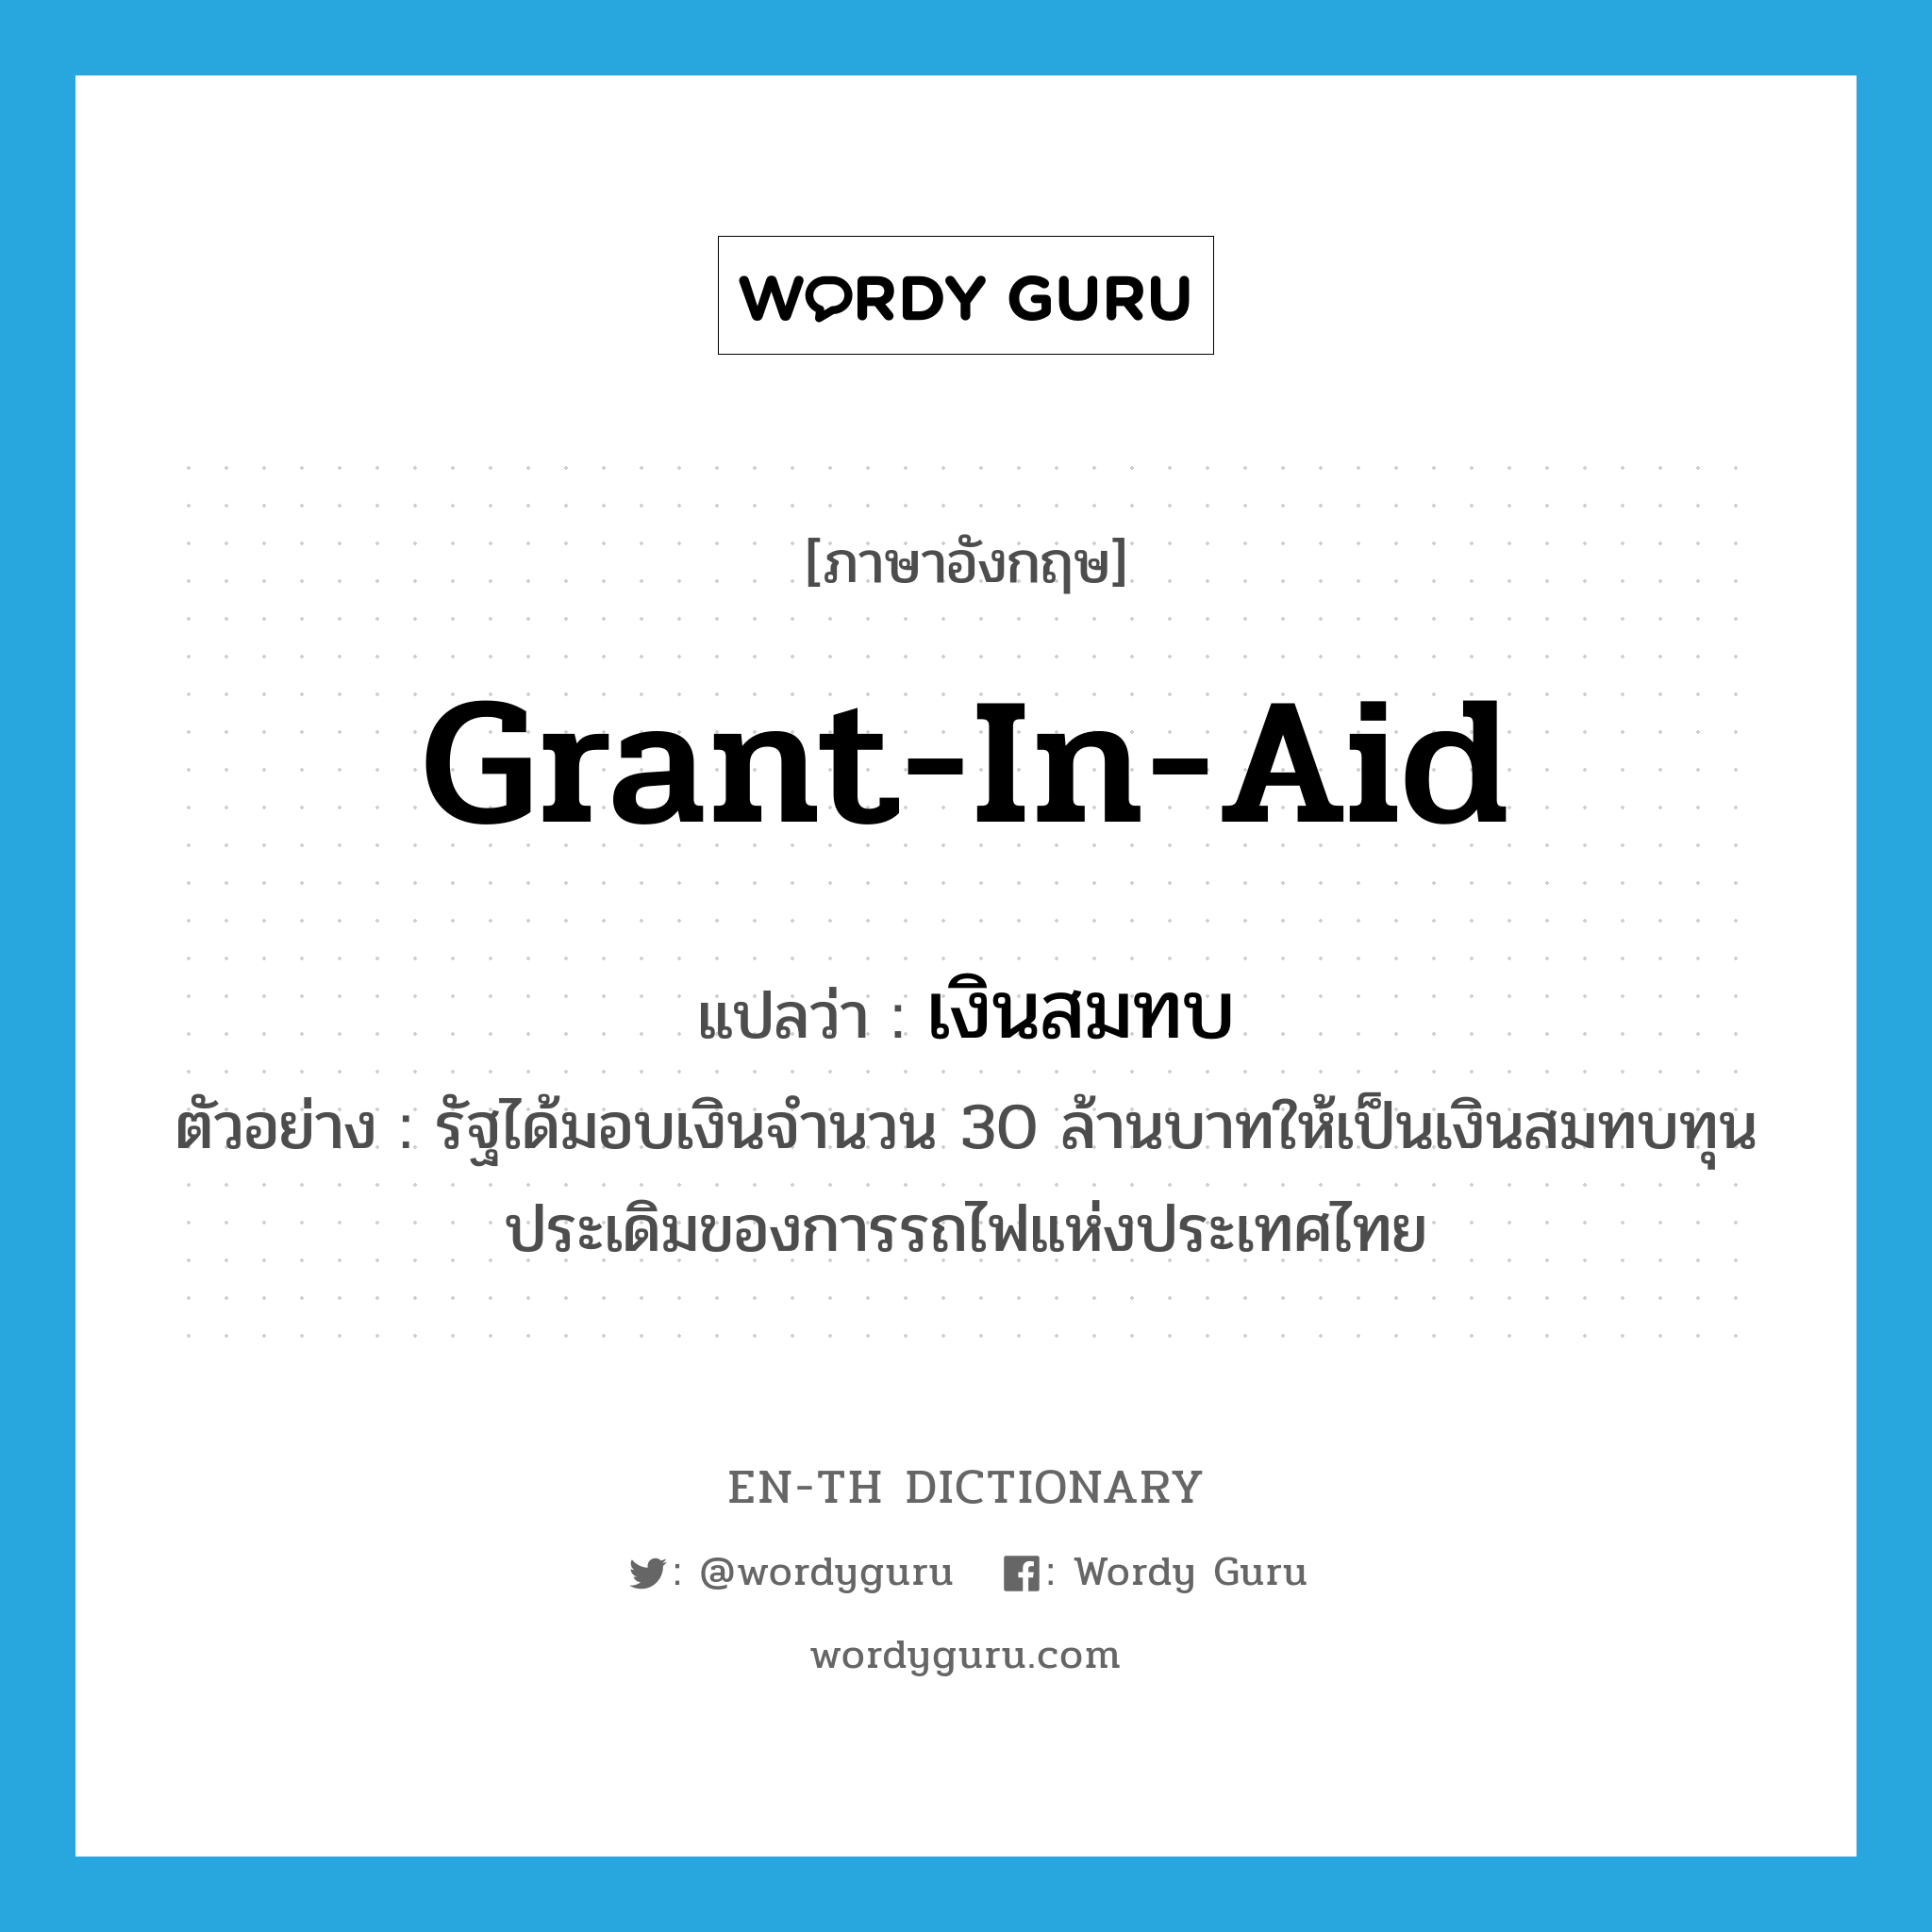 grant-in-aid แปลว่า?, คำศัพท์ภาษาอังกฤษ grant-in-aid แปลว่า เงินสมทบ ประเภท N ตัวอย่าง รัฐได้มอบเงินจำนวน 30 ล้านบาทให้เป็นเงินสมทบทุนประเดิมของการรถไฟแห่งประเทศไทย หมวด N